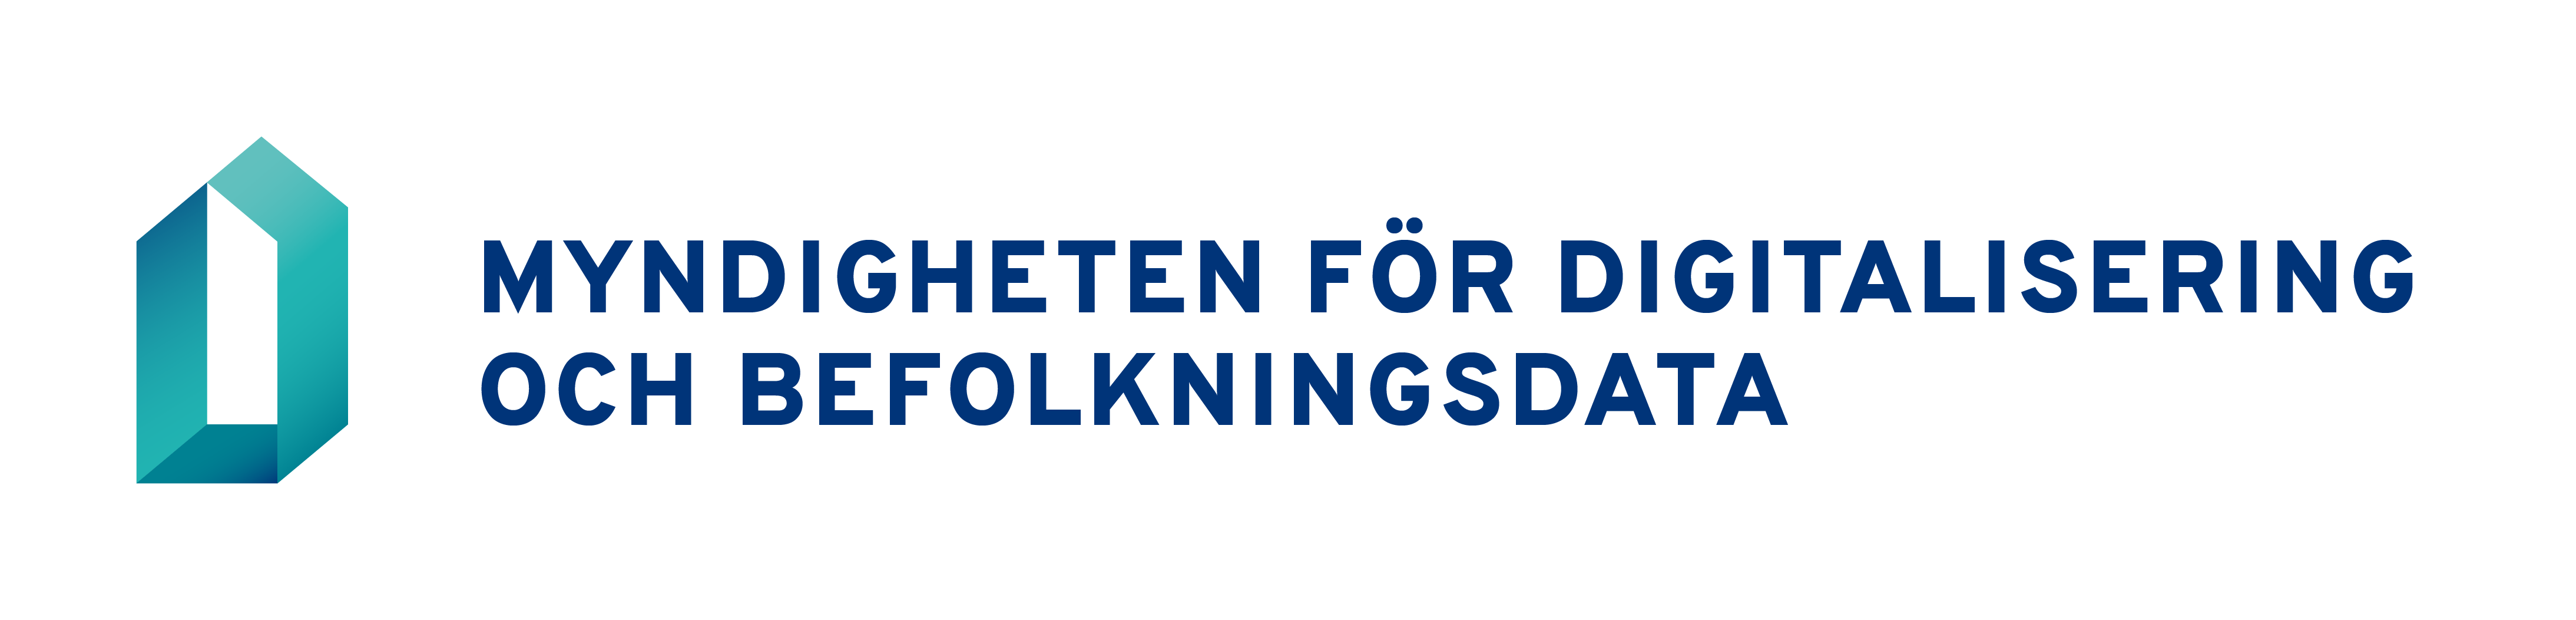 Digi- ja väestötietoviraston logo ruotsiksi, vaakamuotoinen